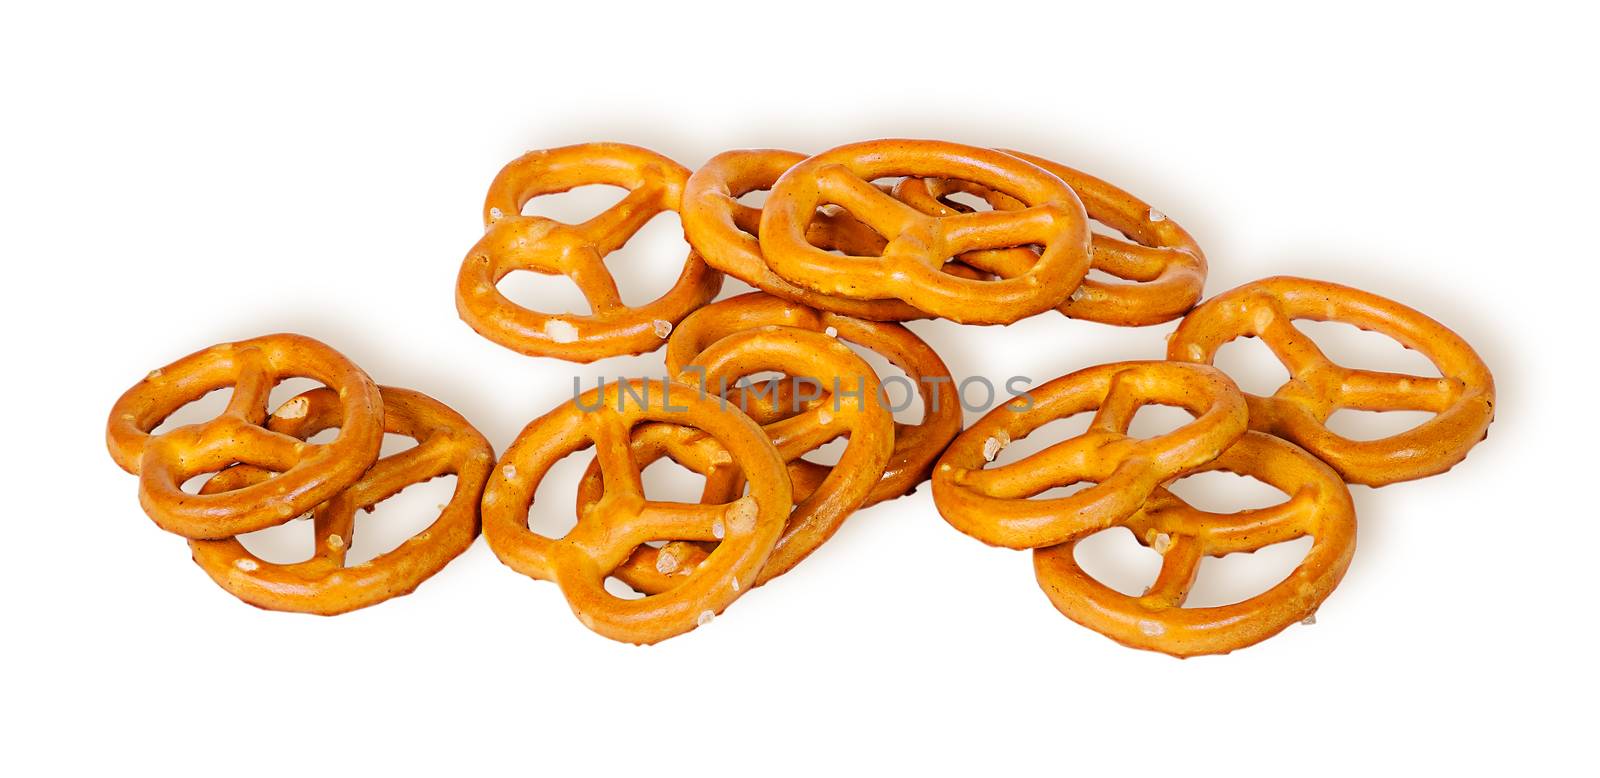 Pile crunchy pretzels with salt by Cipariss